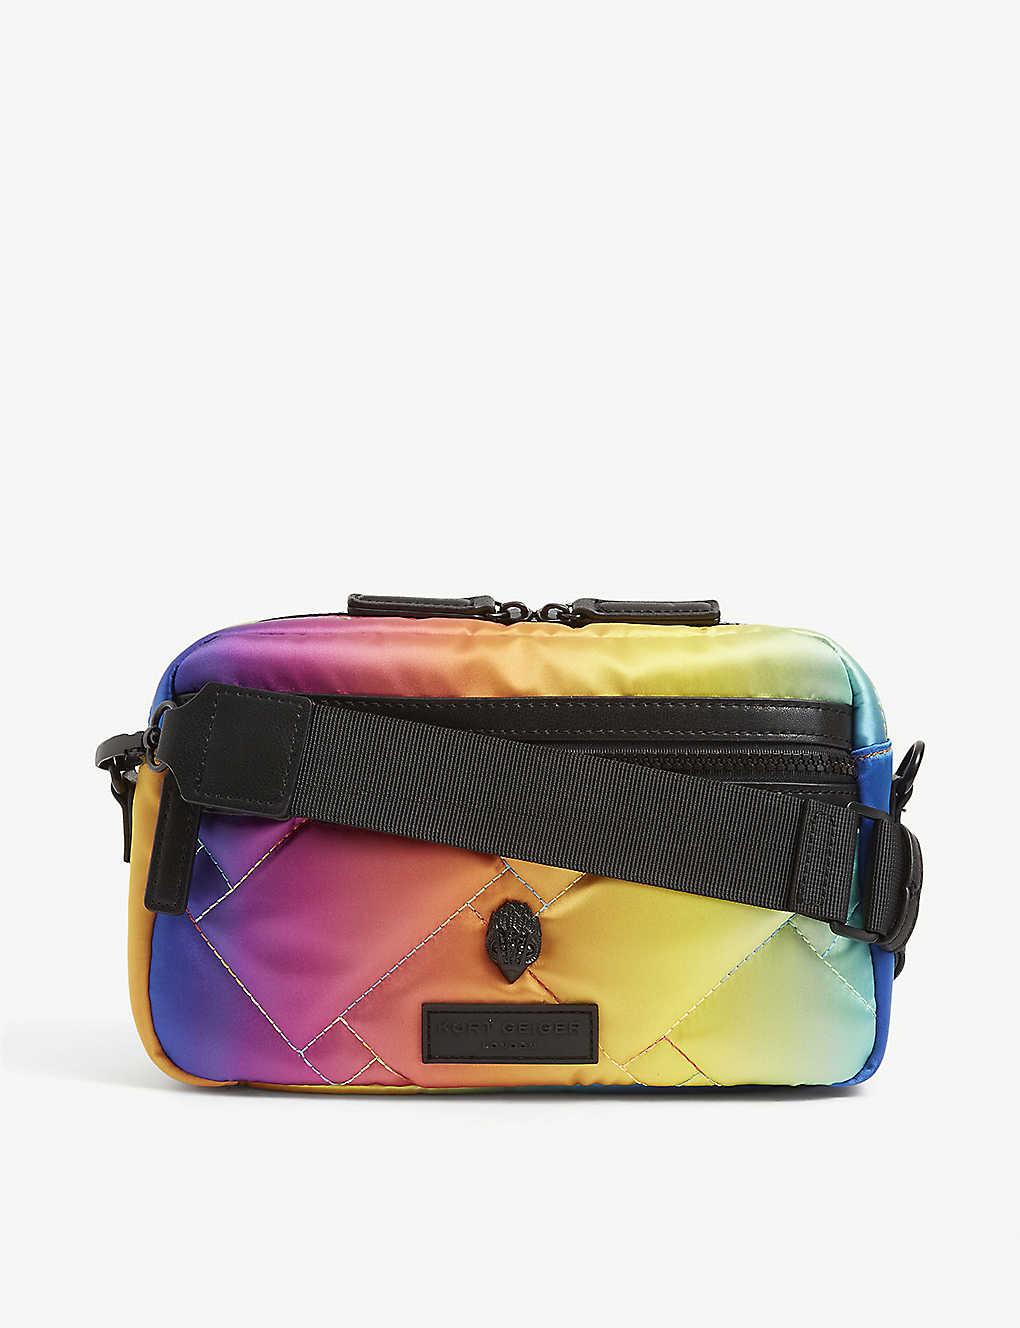 Kurt Geiger, Bags, Kurt Geiger Acrylic Glitter Rainbow Shaped Clutch  Shoulder Bag Nwt